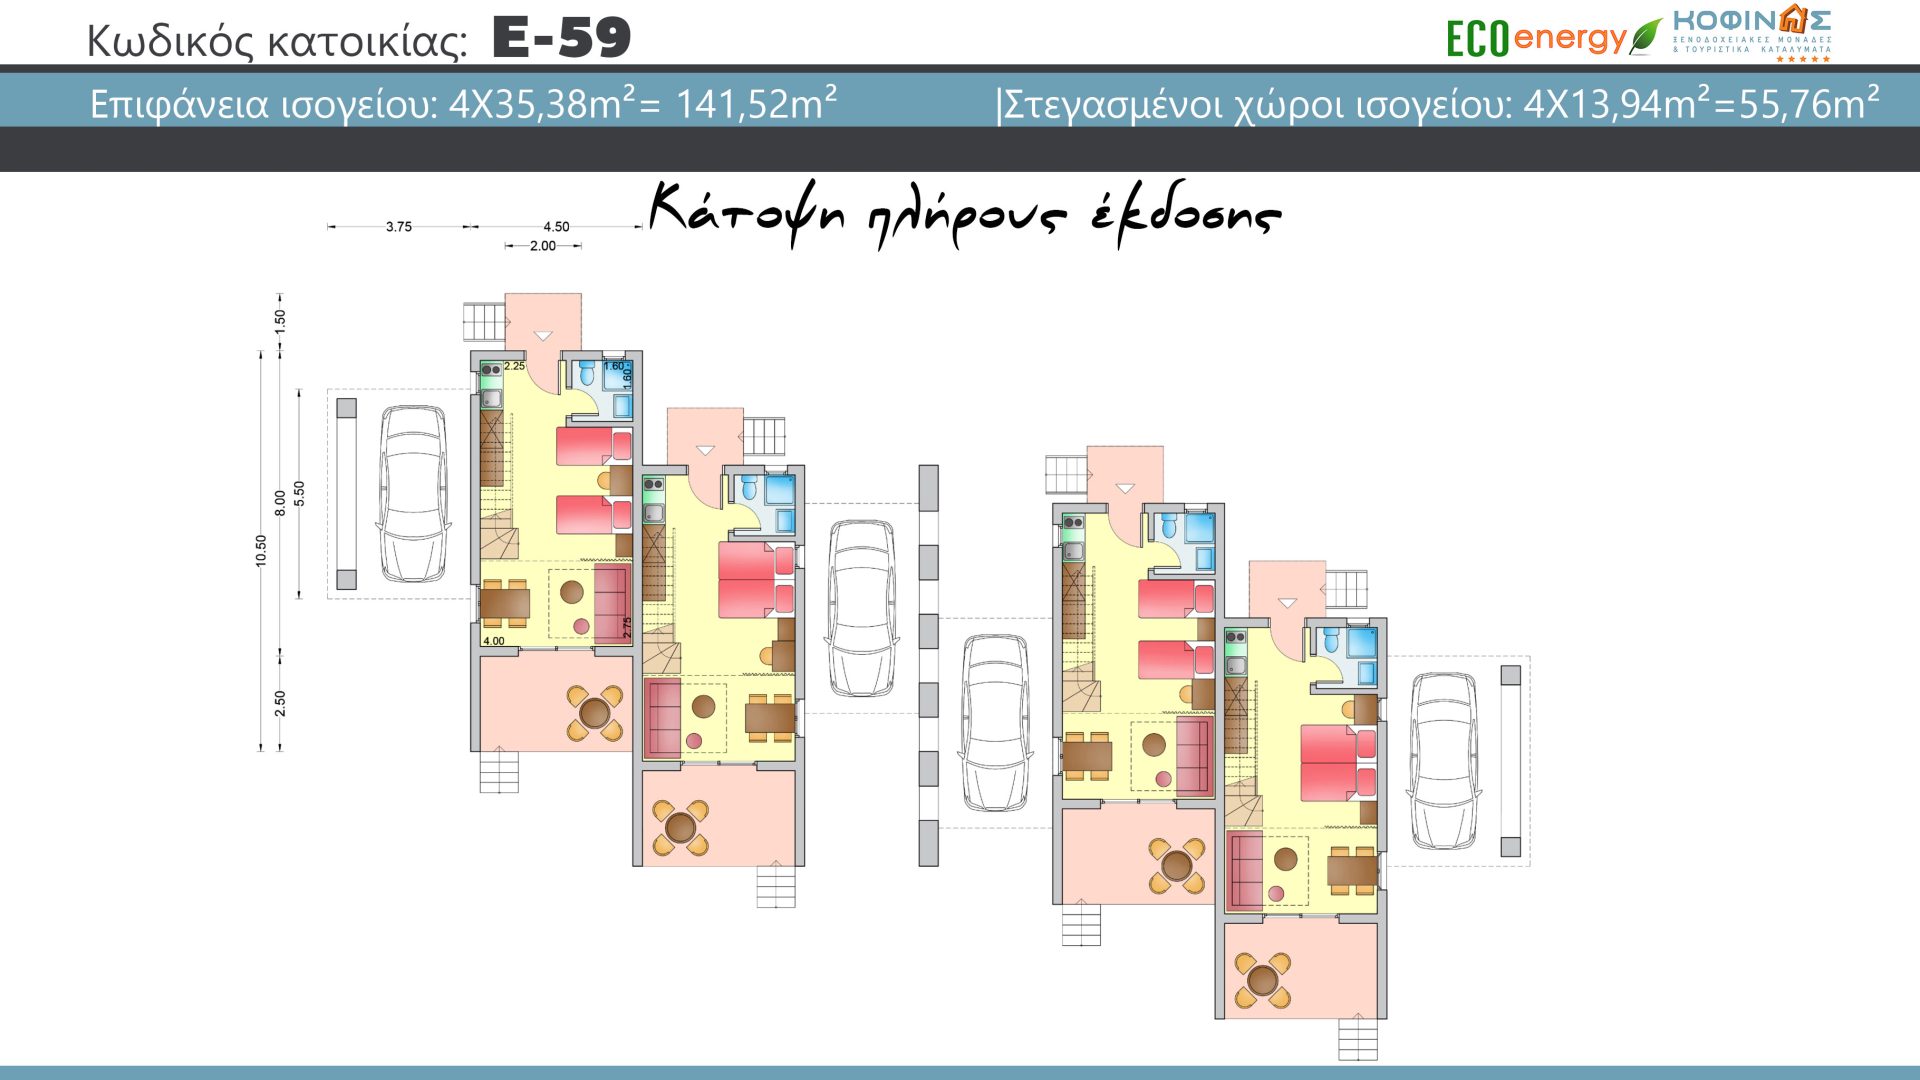 Συγκρότημα Κατοικιών E-59, συνολικής επιφάνειας 4 x 59,82 = 239,28 τ.μ., συνολική επιφάνεια στεγασμένων χώρων 67,76 τ.μ.